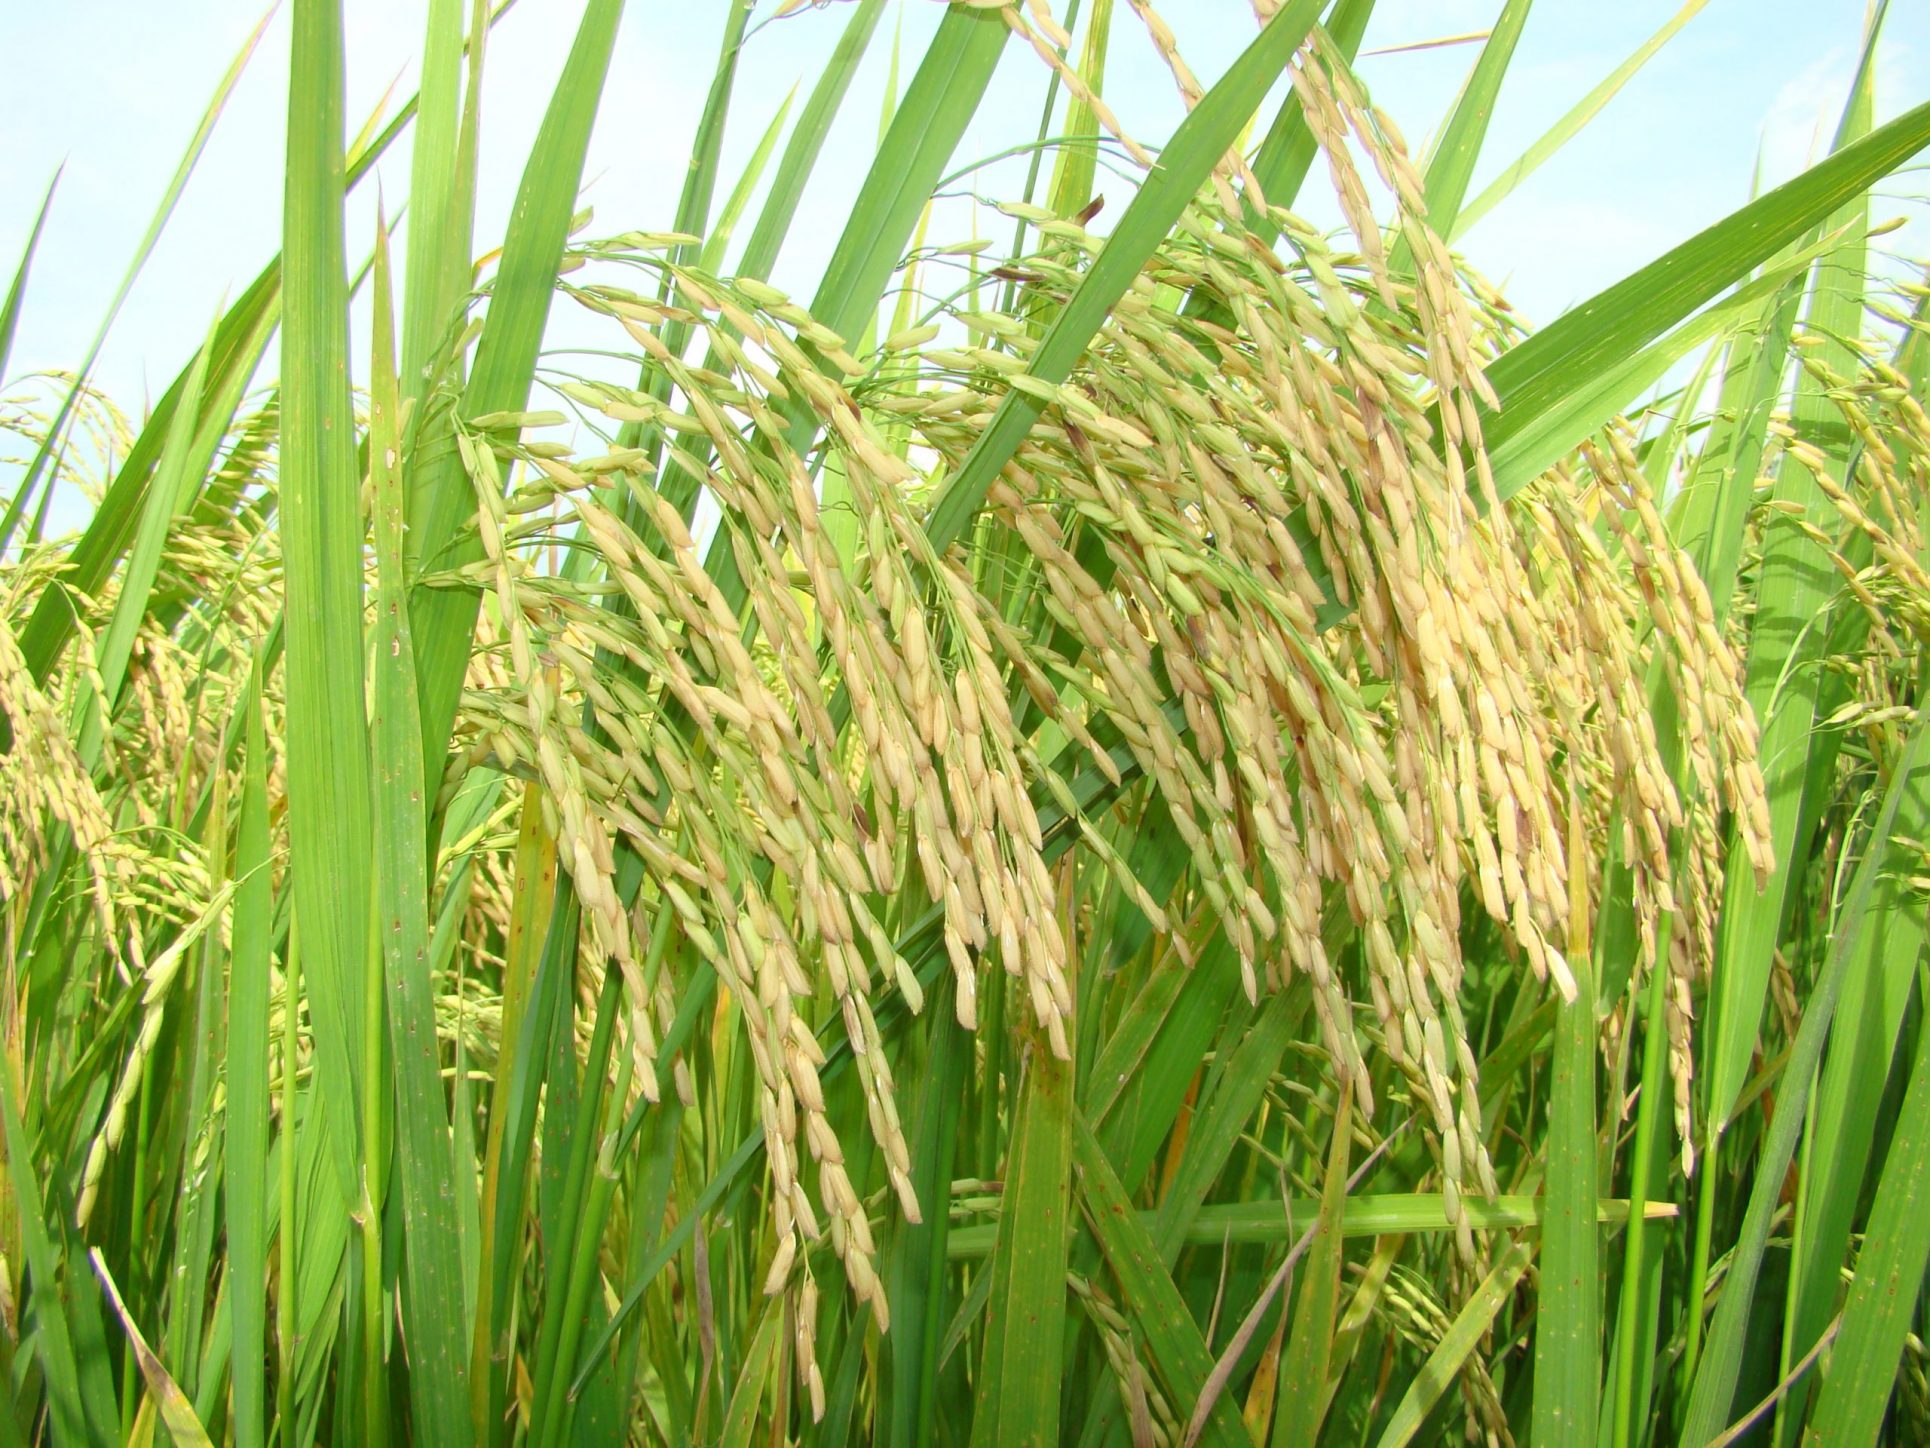 Productores ticos tendrán acceso a variedad de arroz que se obtiene por mejoramiento genético